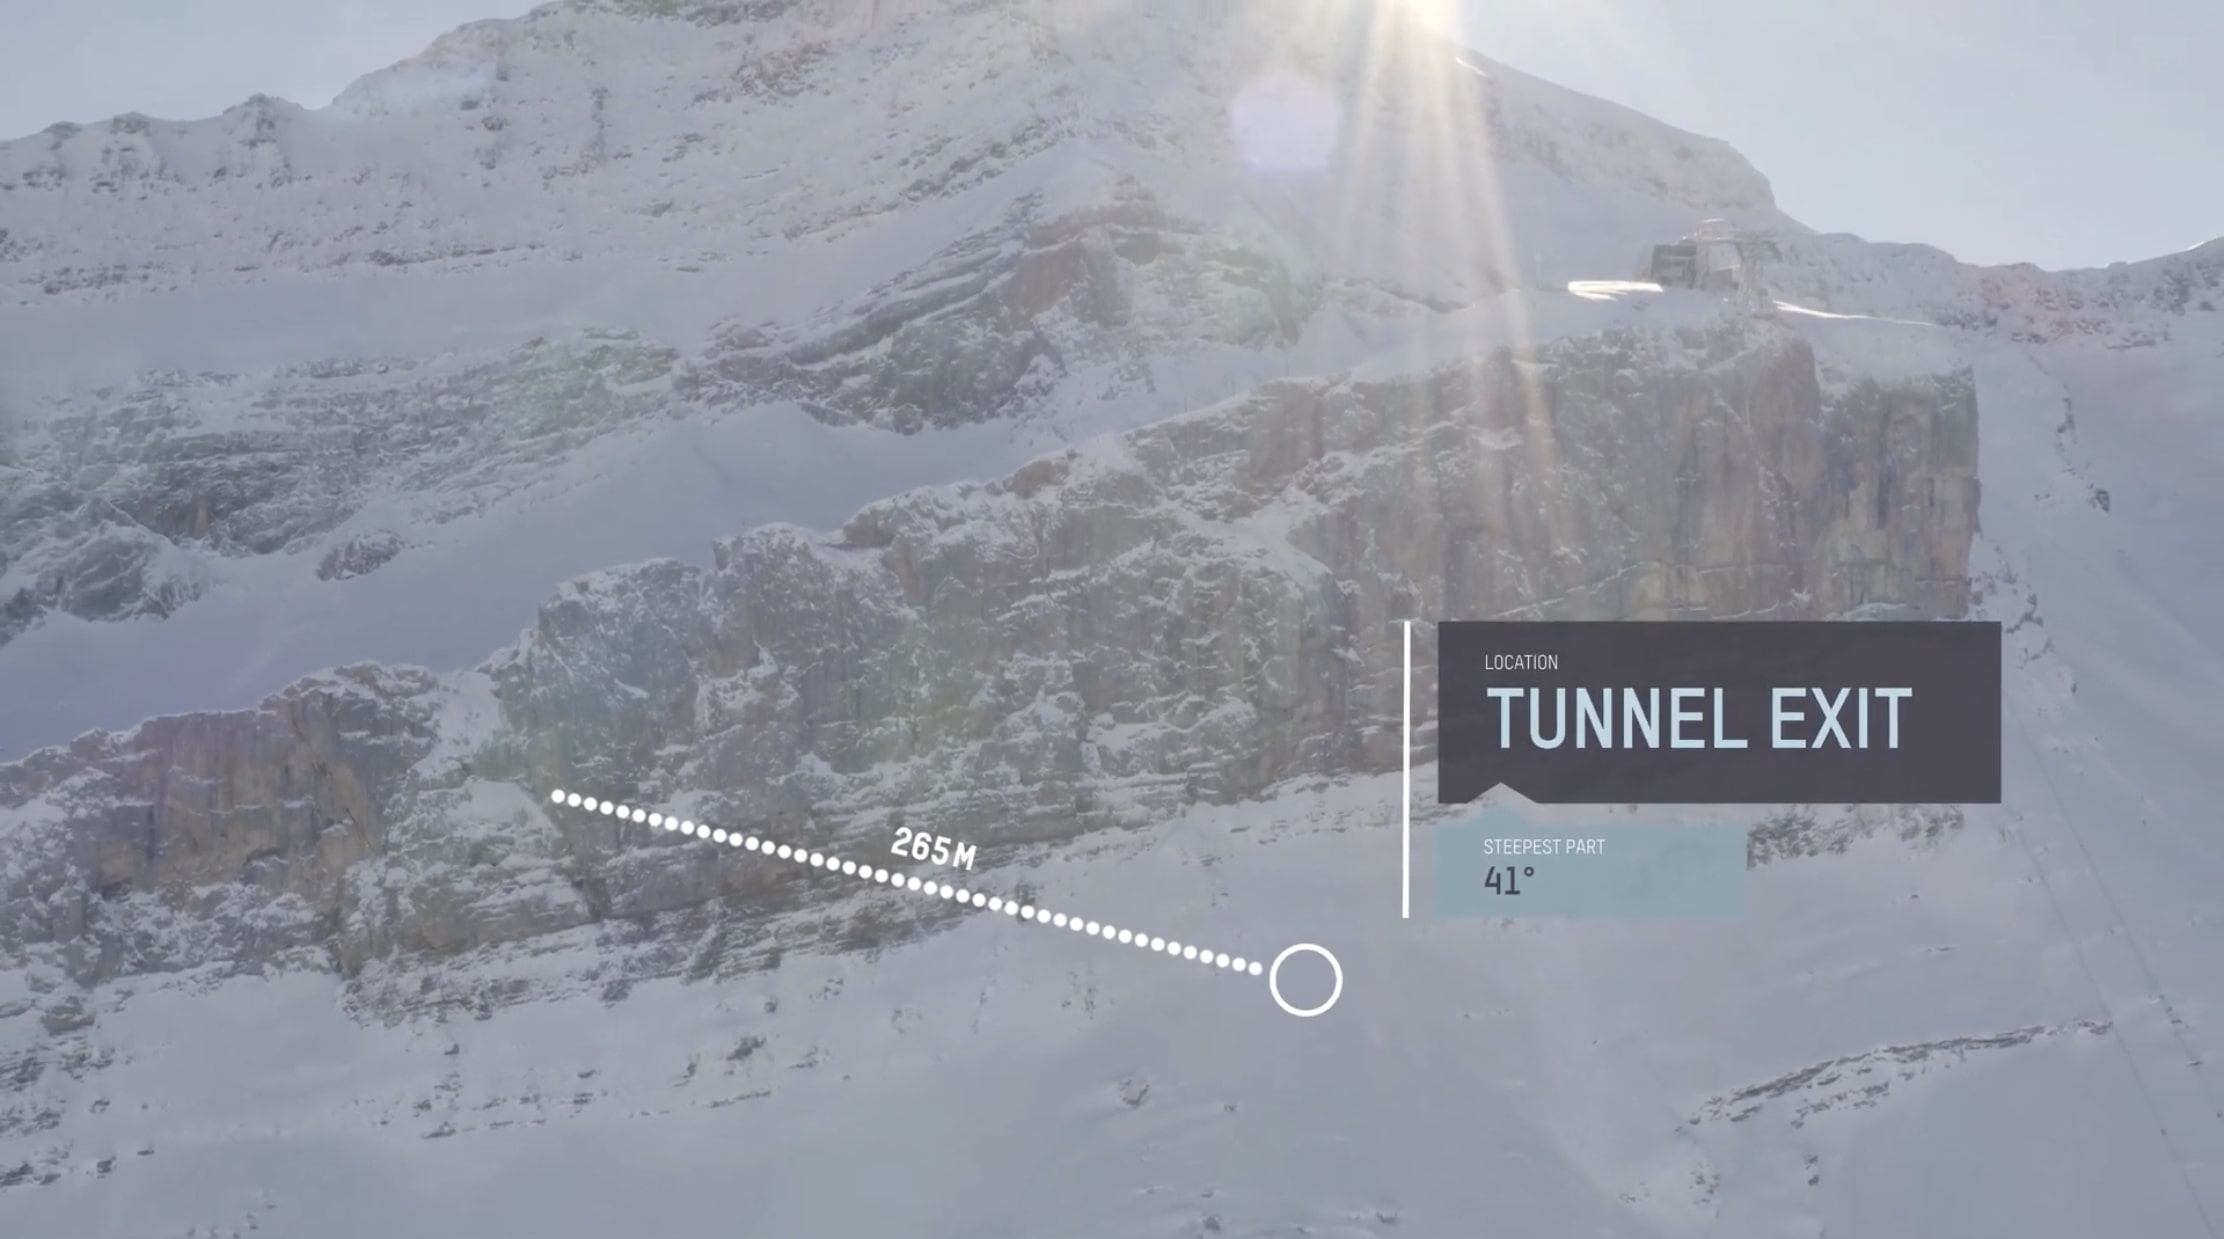 The Glacier 3000 tunnel